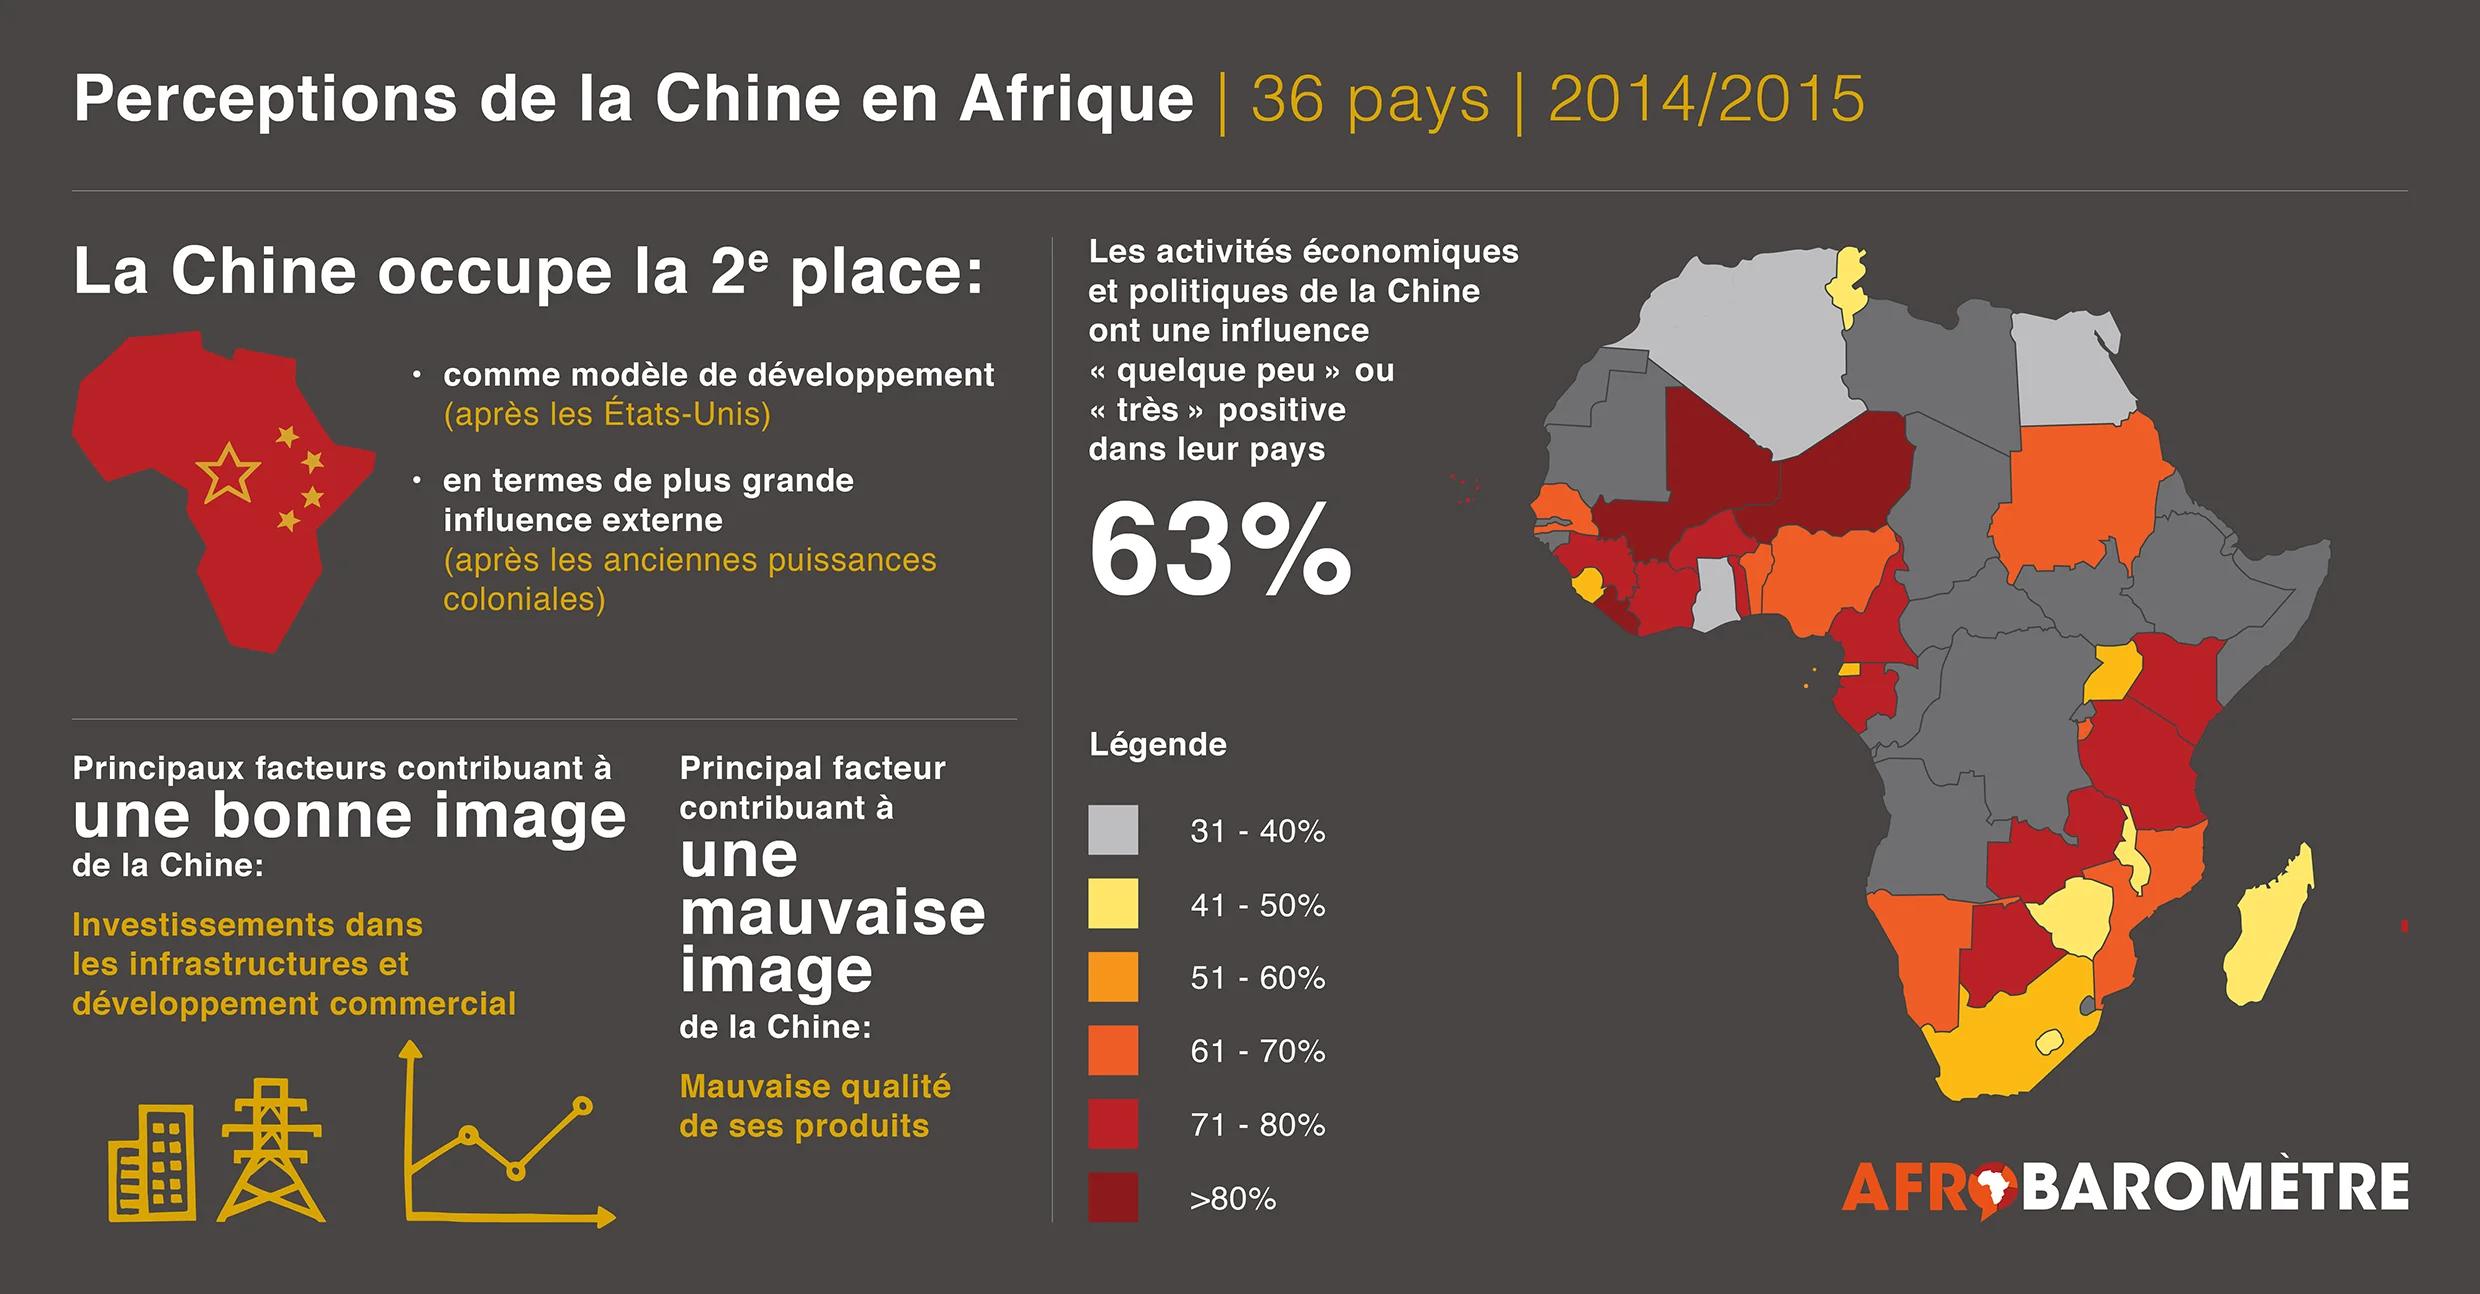 La Chine en Afrique